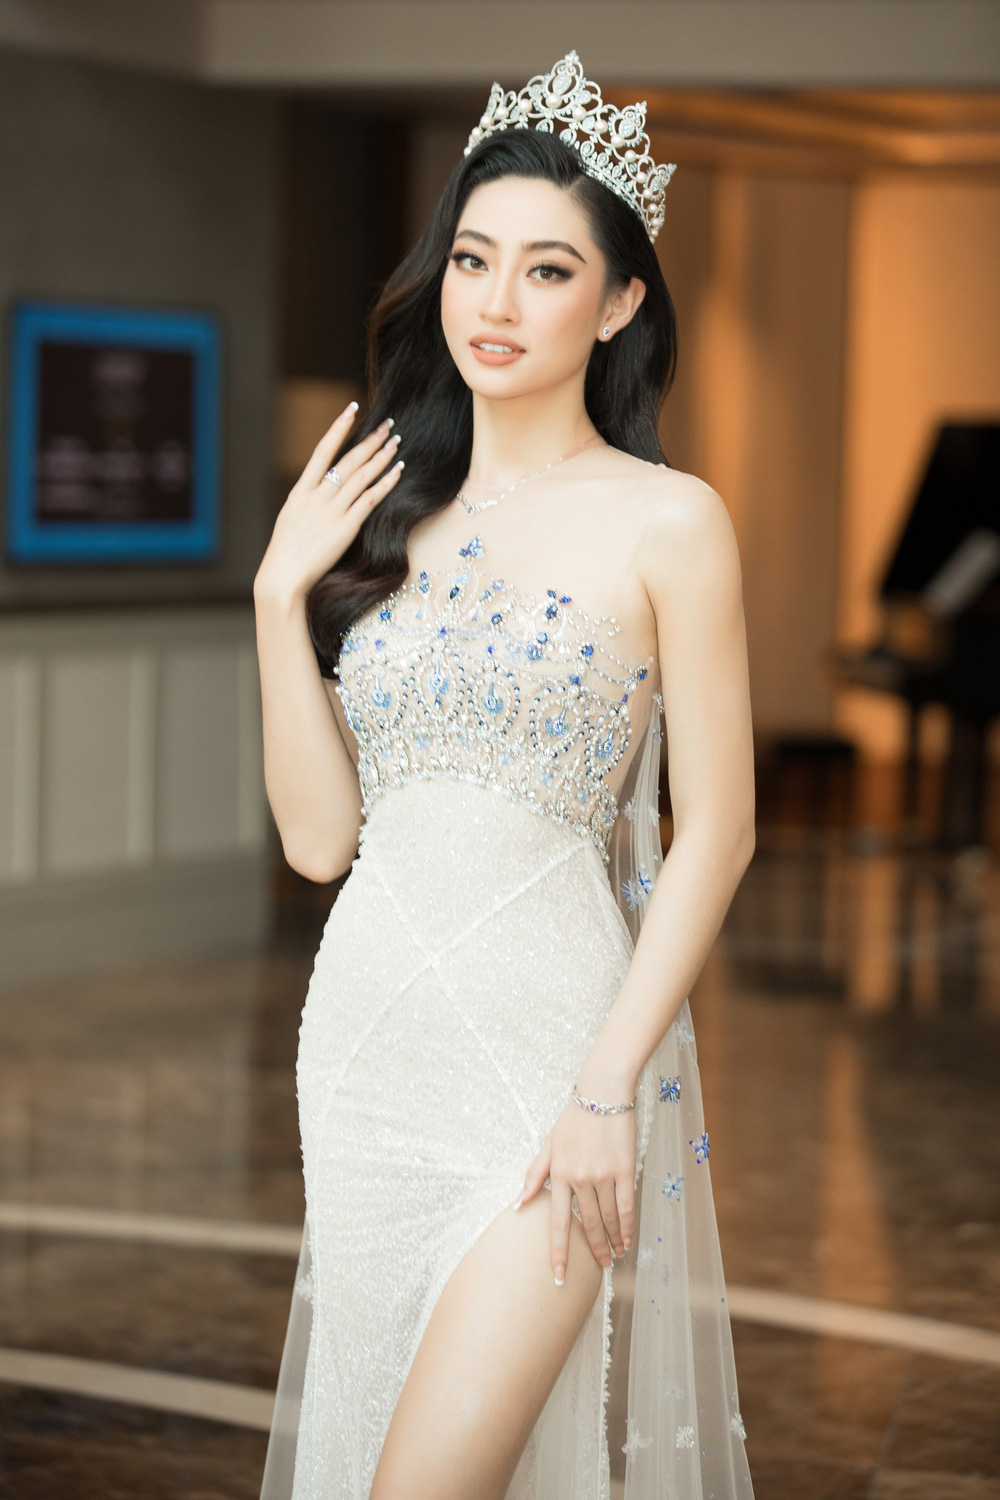 Đỗ Thị Hà nổi bật giữa dàn Hoa hậu tại họp báo Miss World Vietnam 2021 - Ảnh 3.